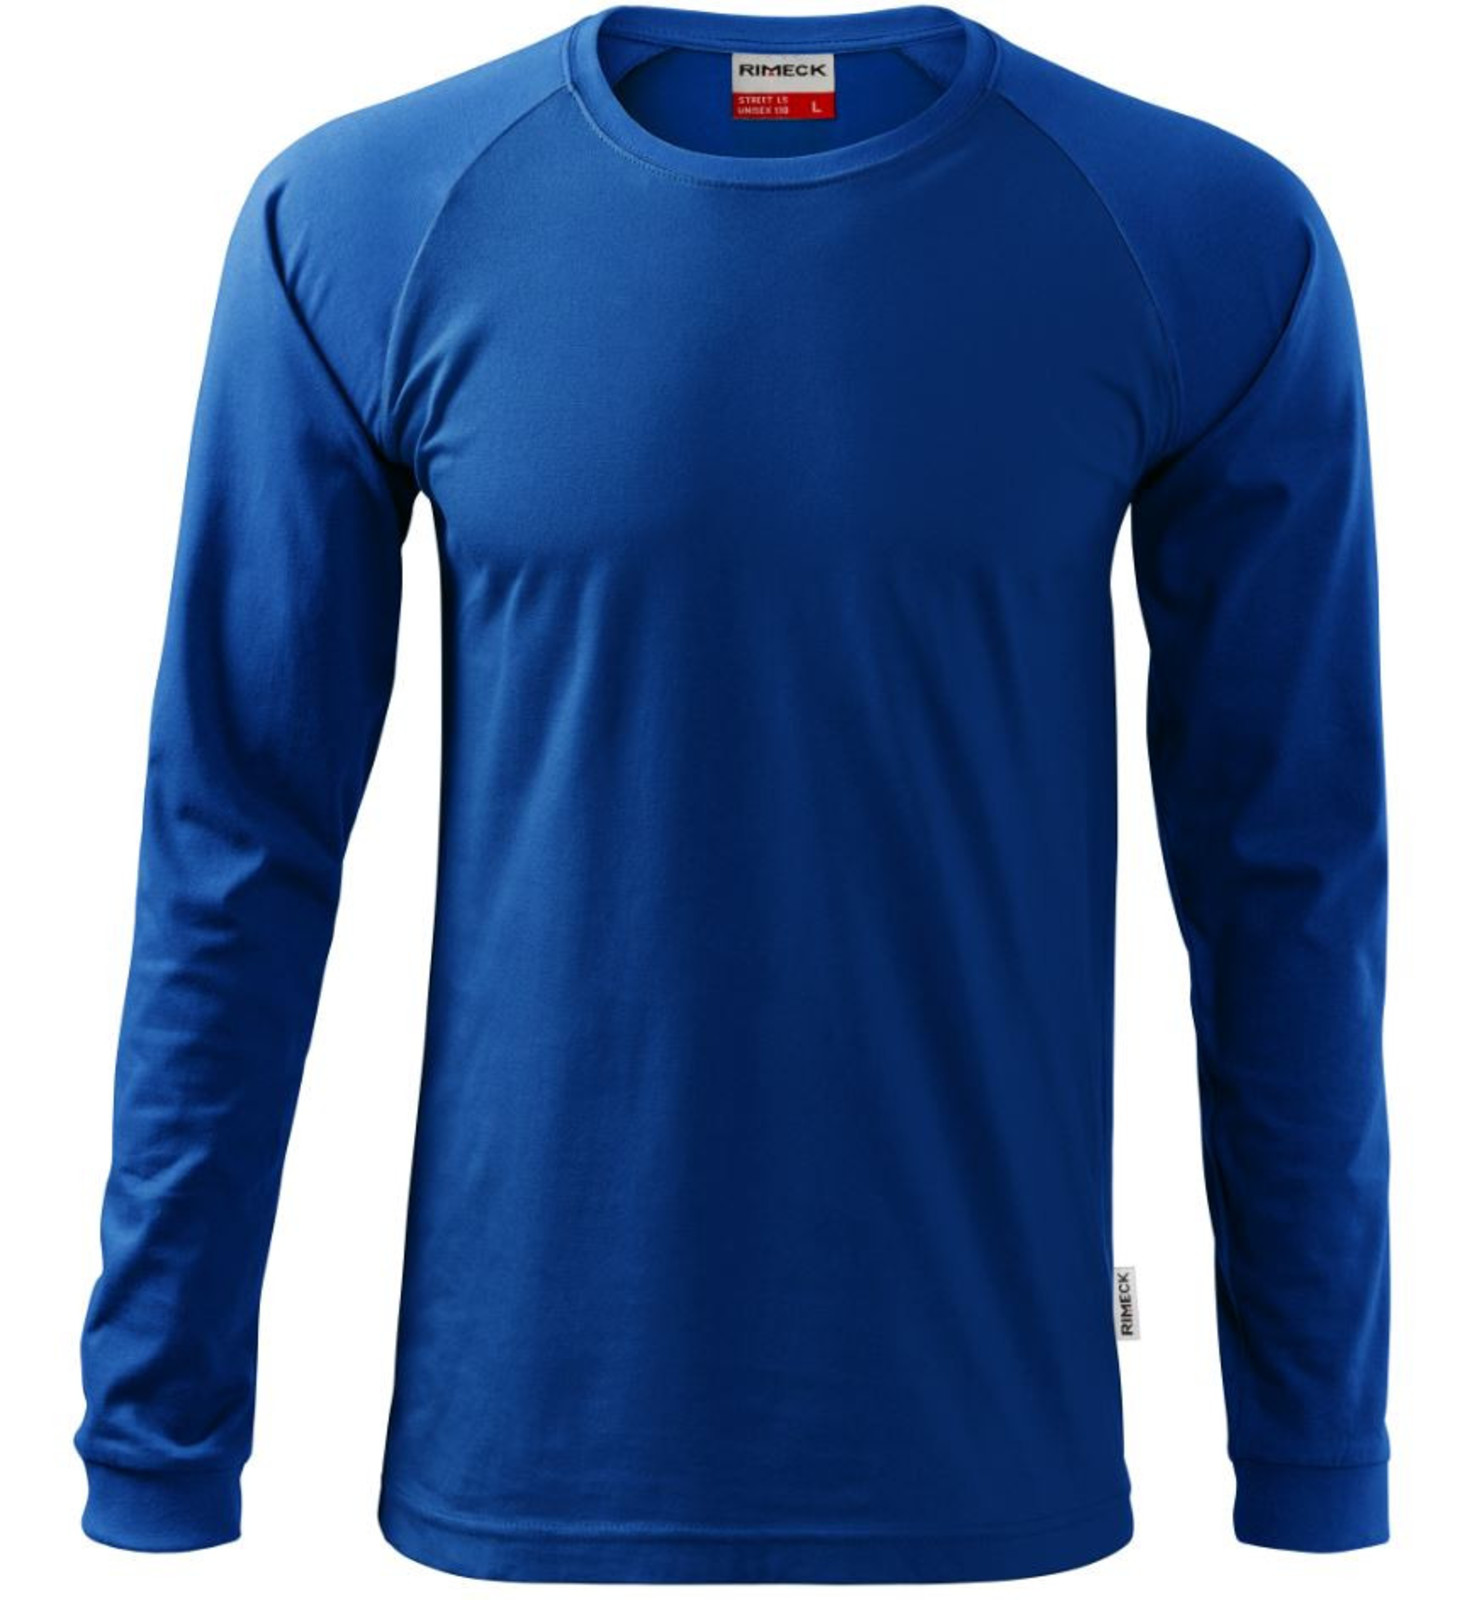 Unisex tričko s dlhým rukávom Rimeck Street LS 130 - veľkosť: M, farba: kráľovská modrá